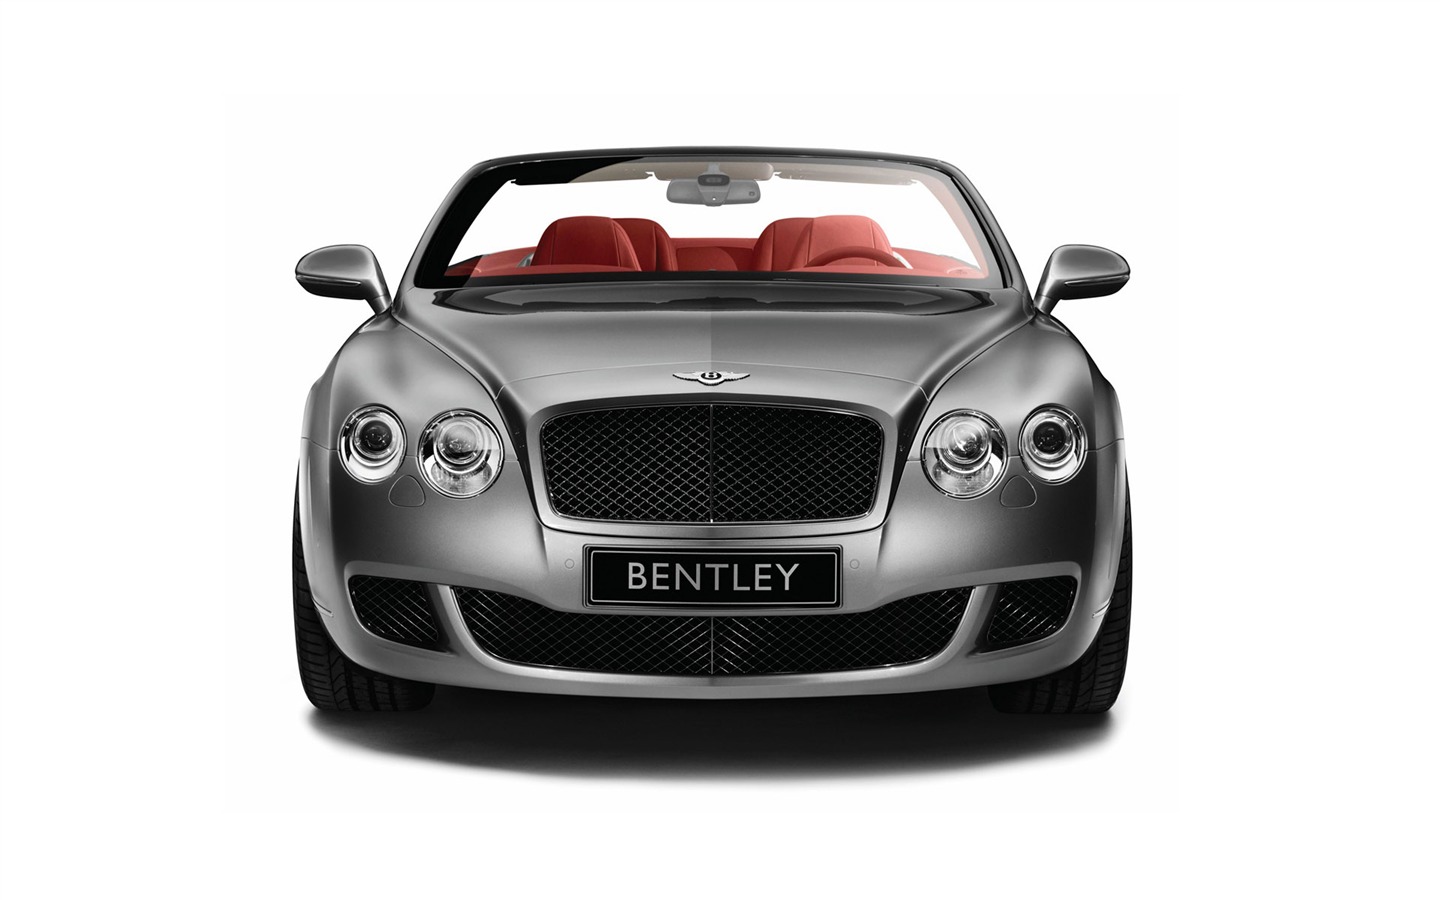 Bentley 宾利 壁纸专辑(一)20 - 1440x900